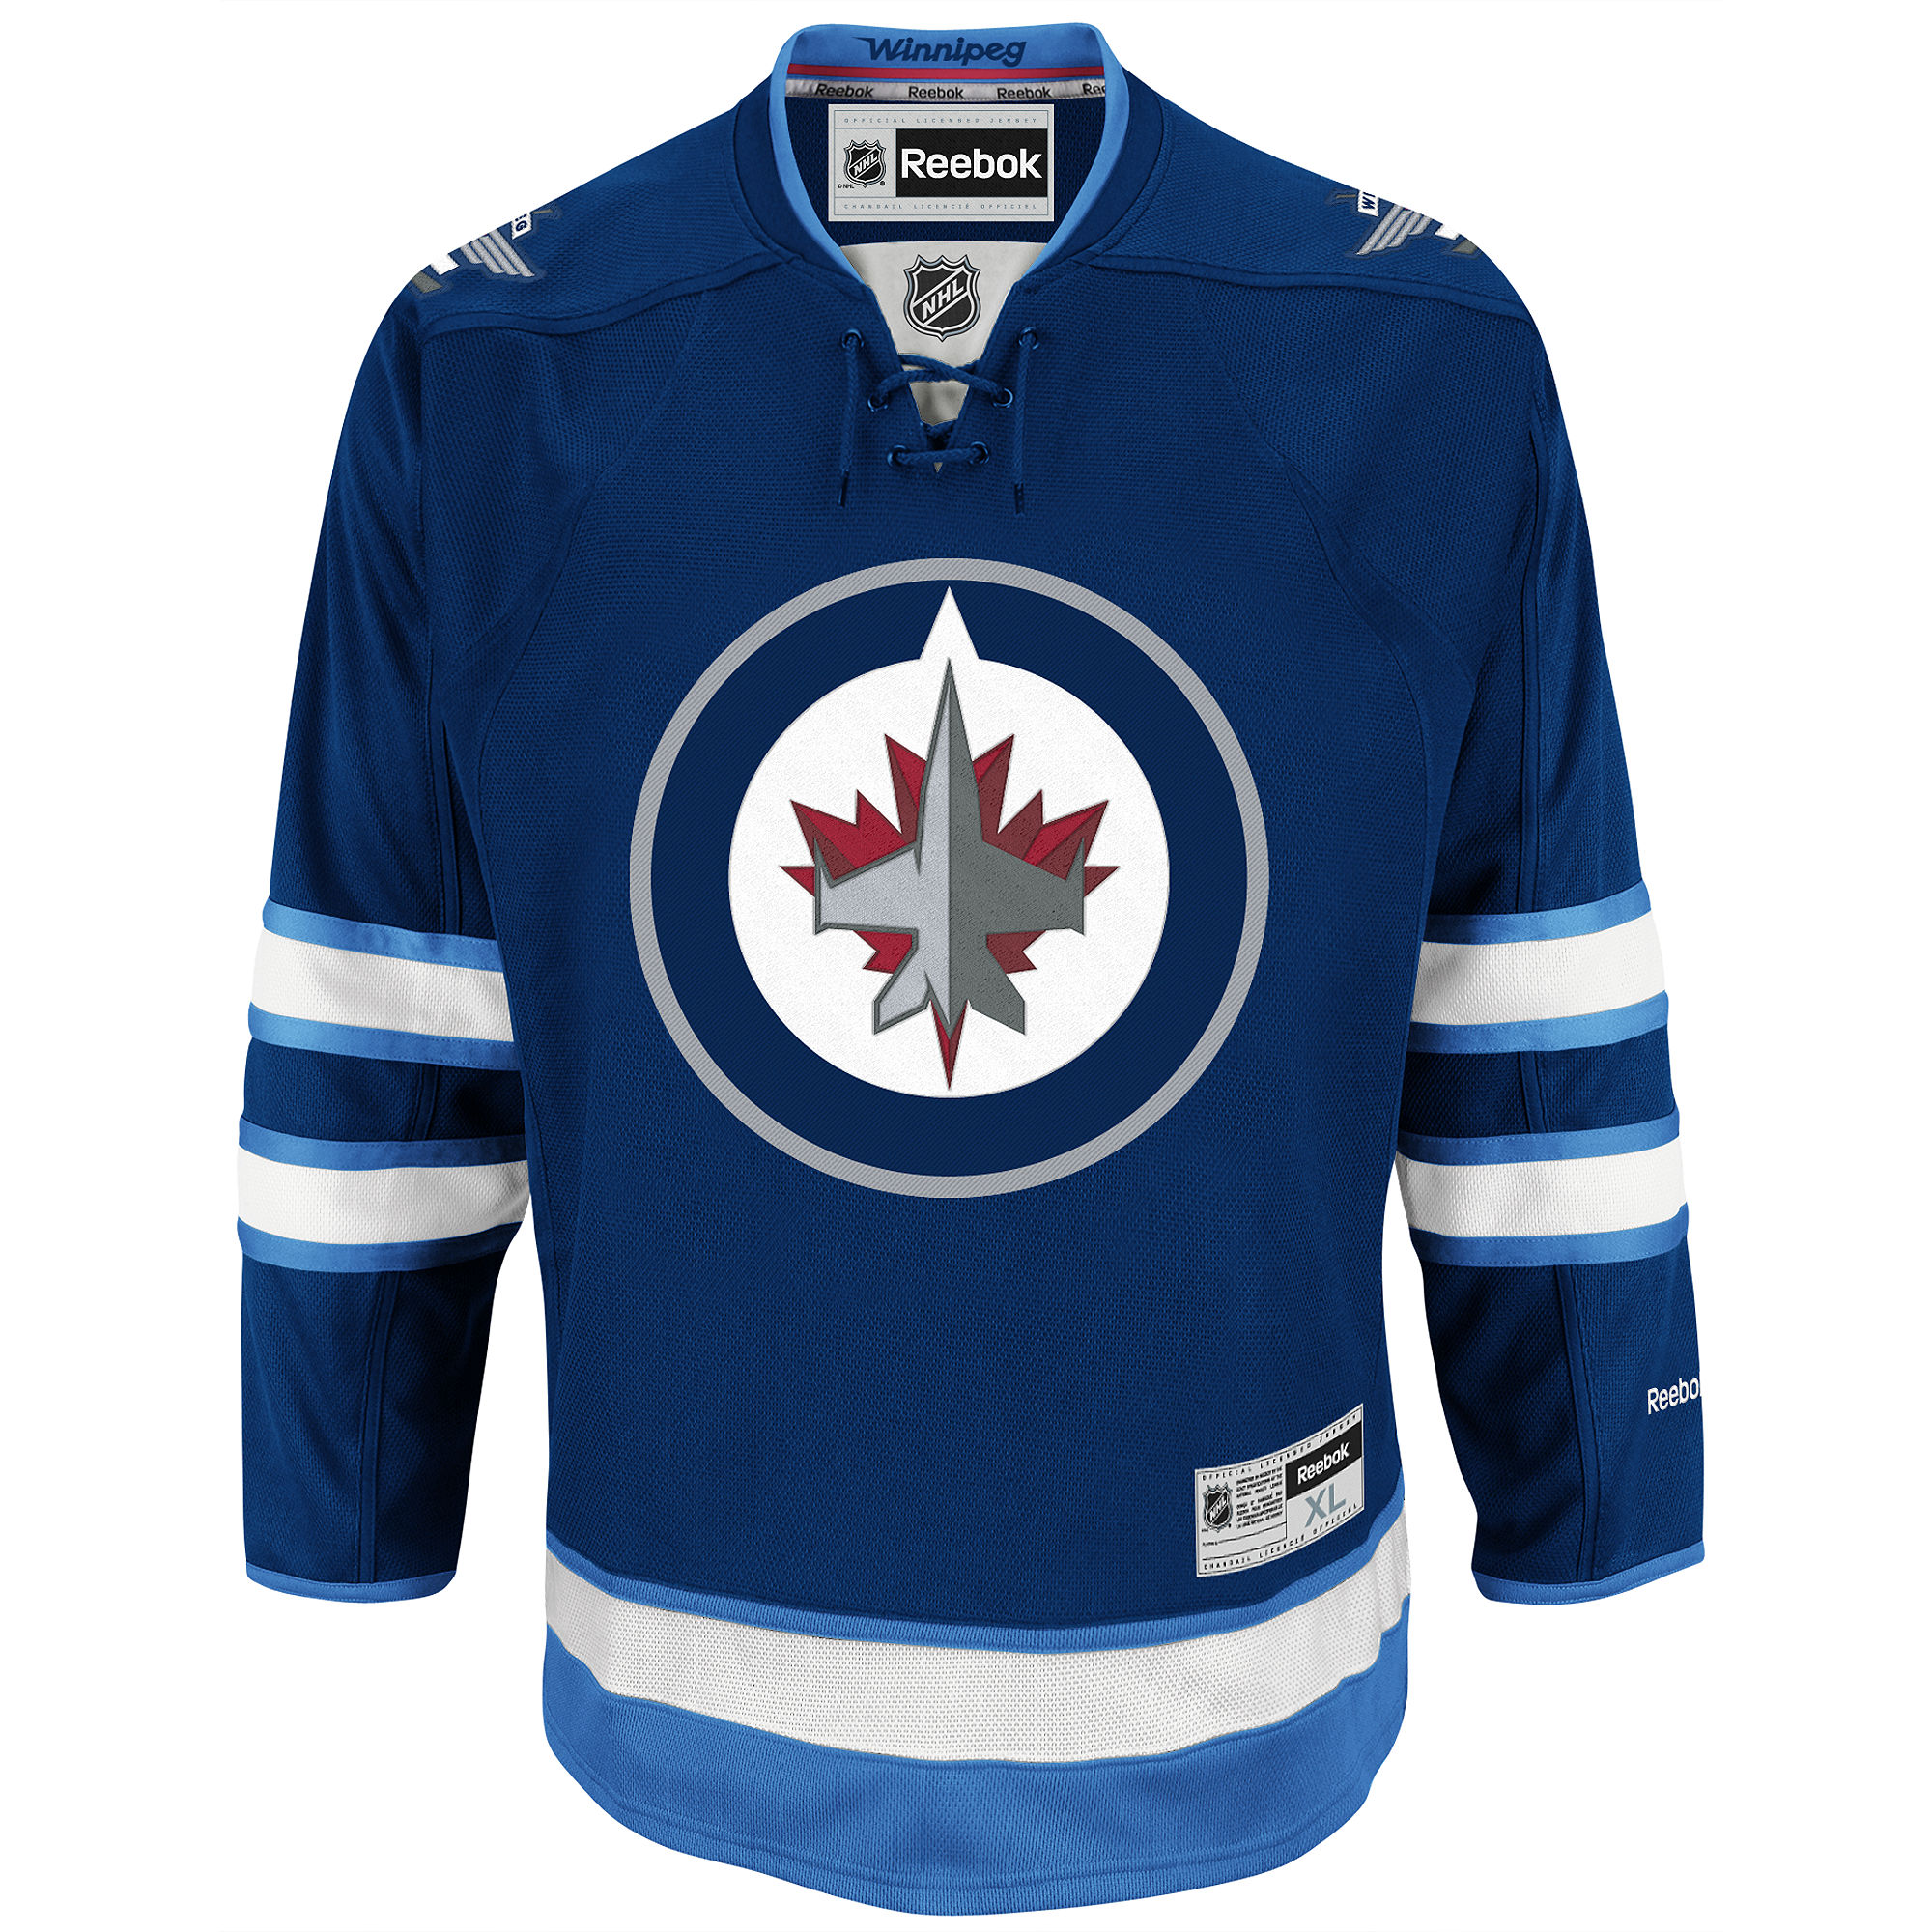 Reebok Winnipeg Jets Premier Hockey Jersey in Blue Navy (Blue) for Men - Lyst